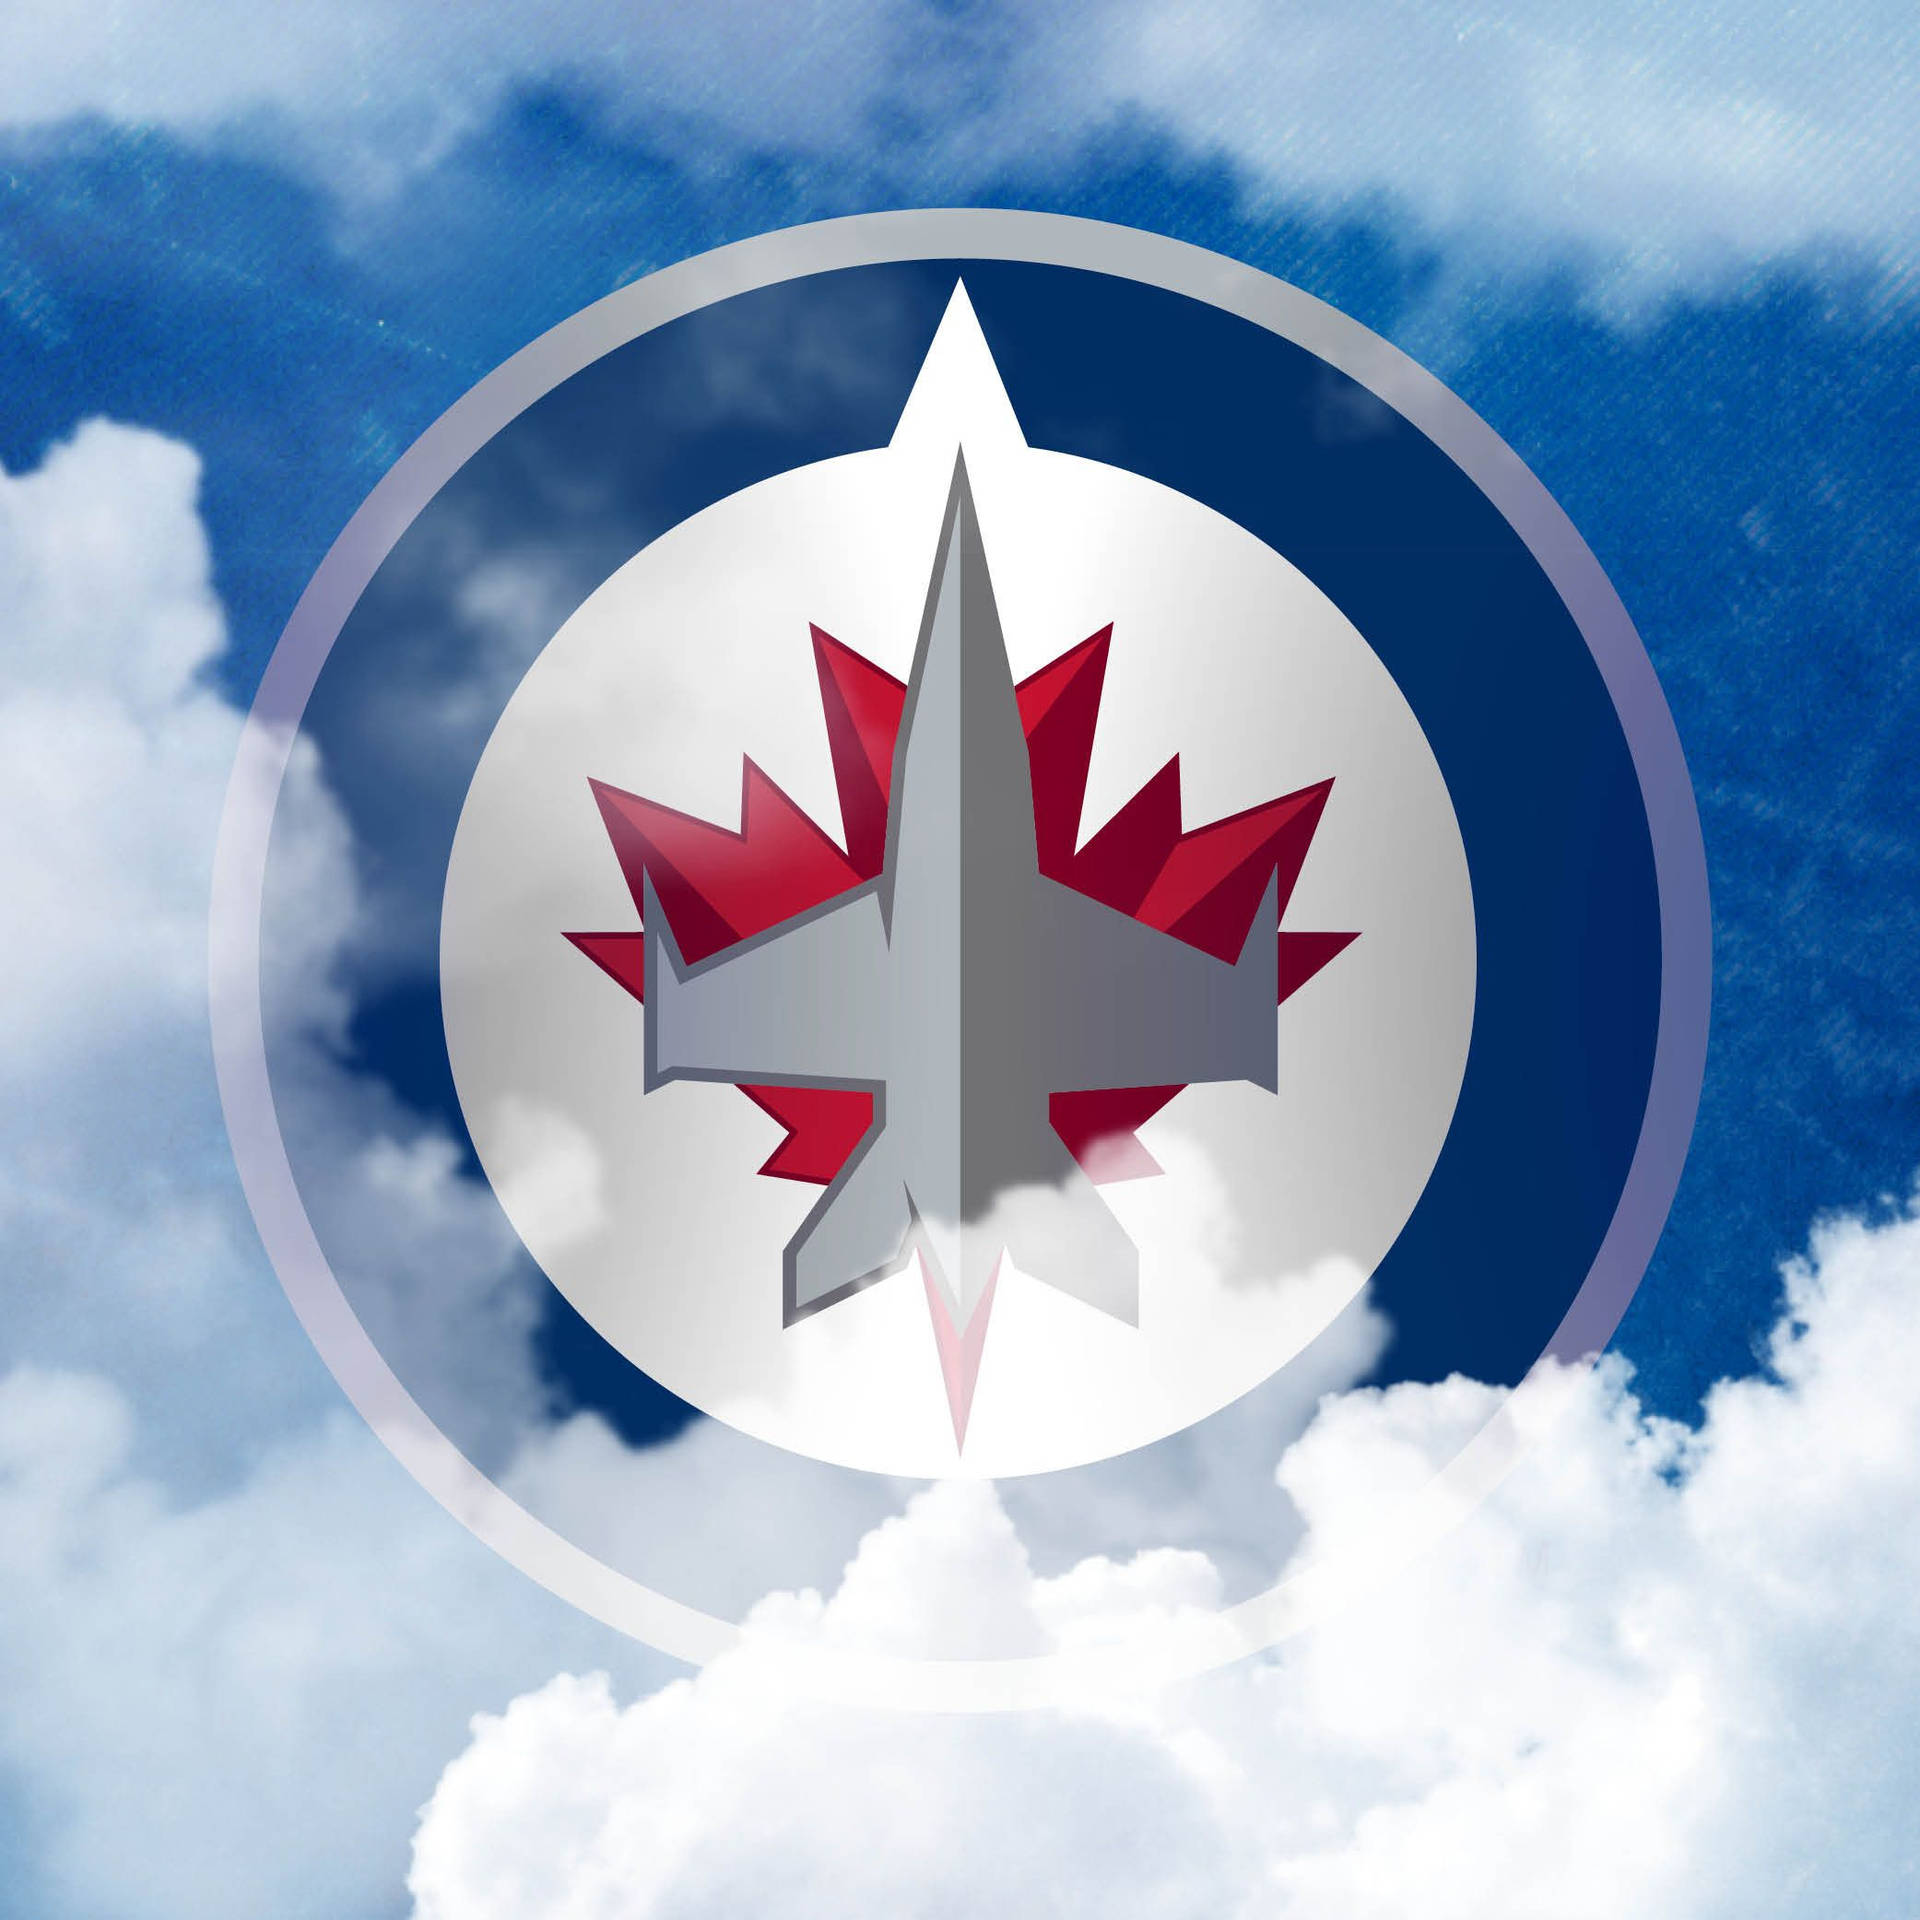 Winnipeg Jets Hockey Team Logo Wallpaper